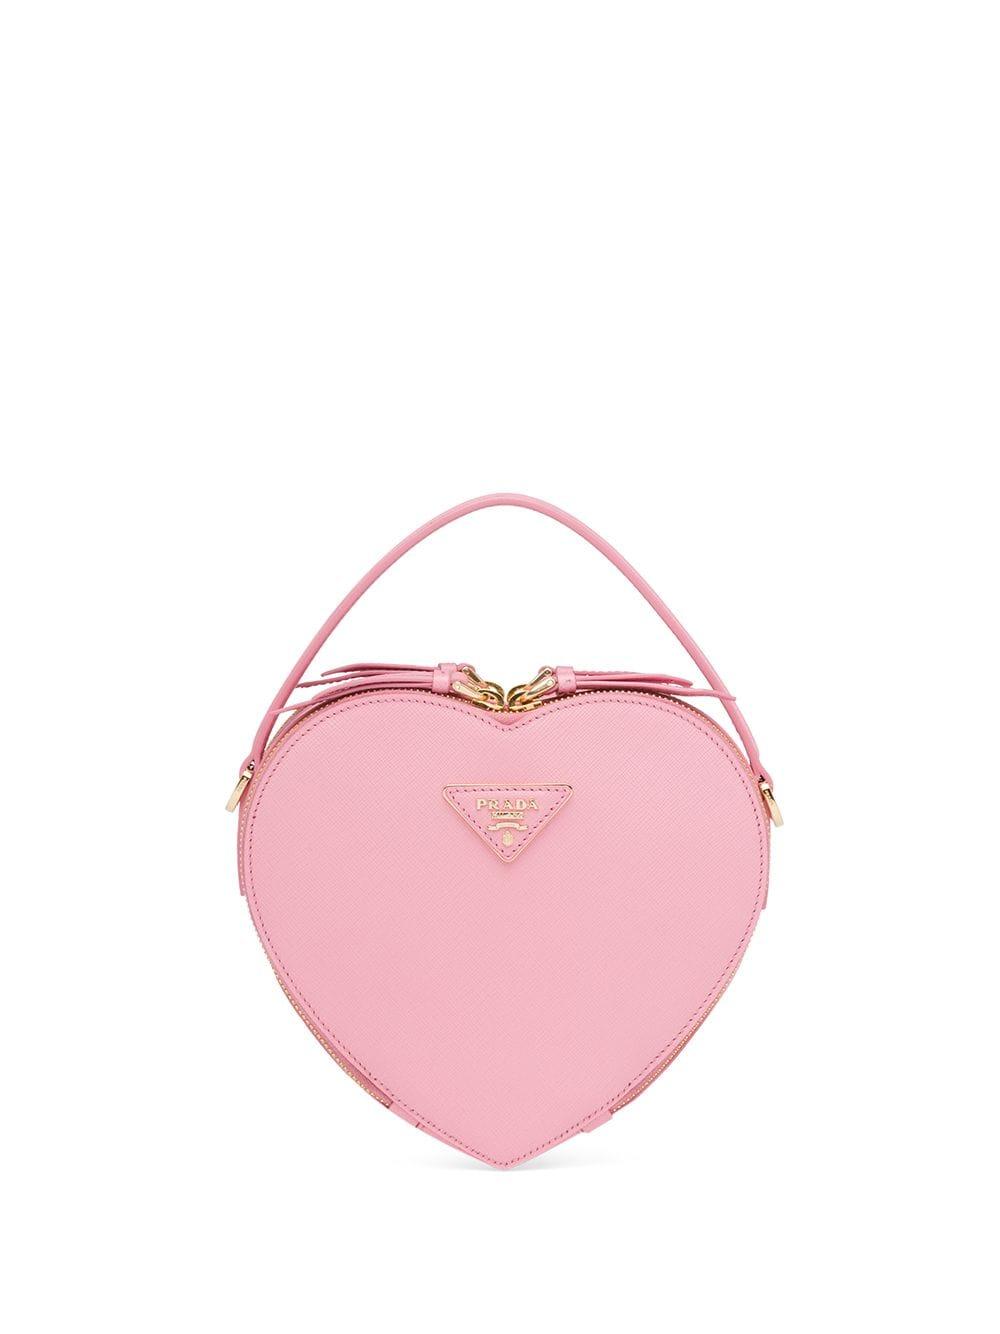 prada pink heart bag